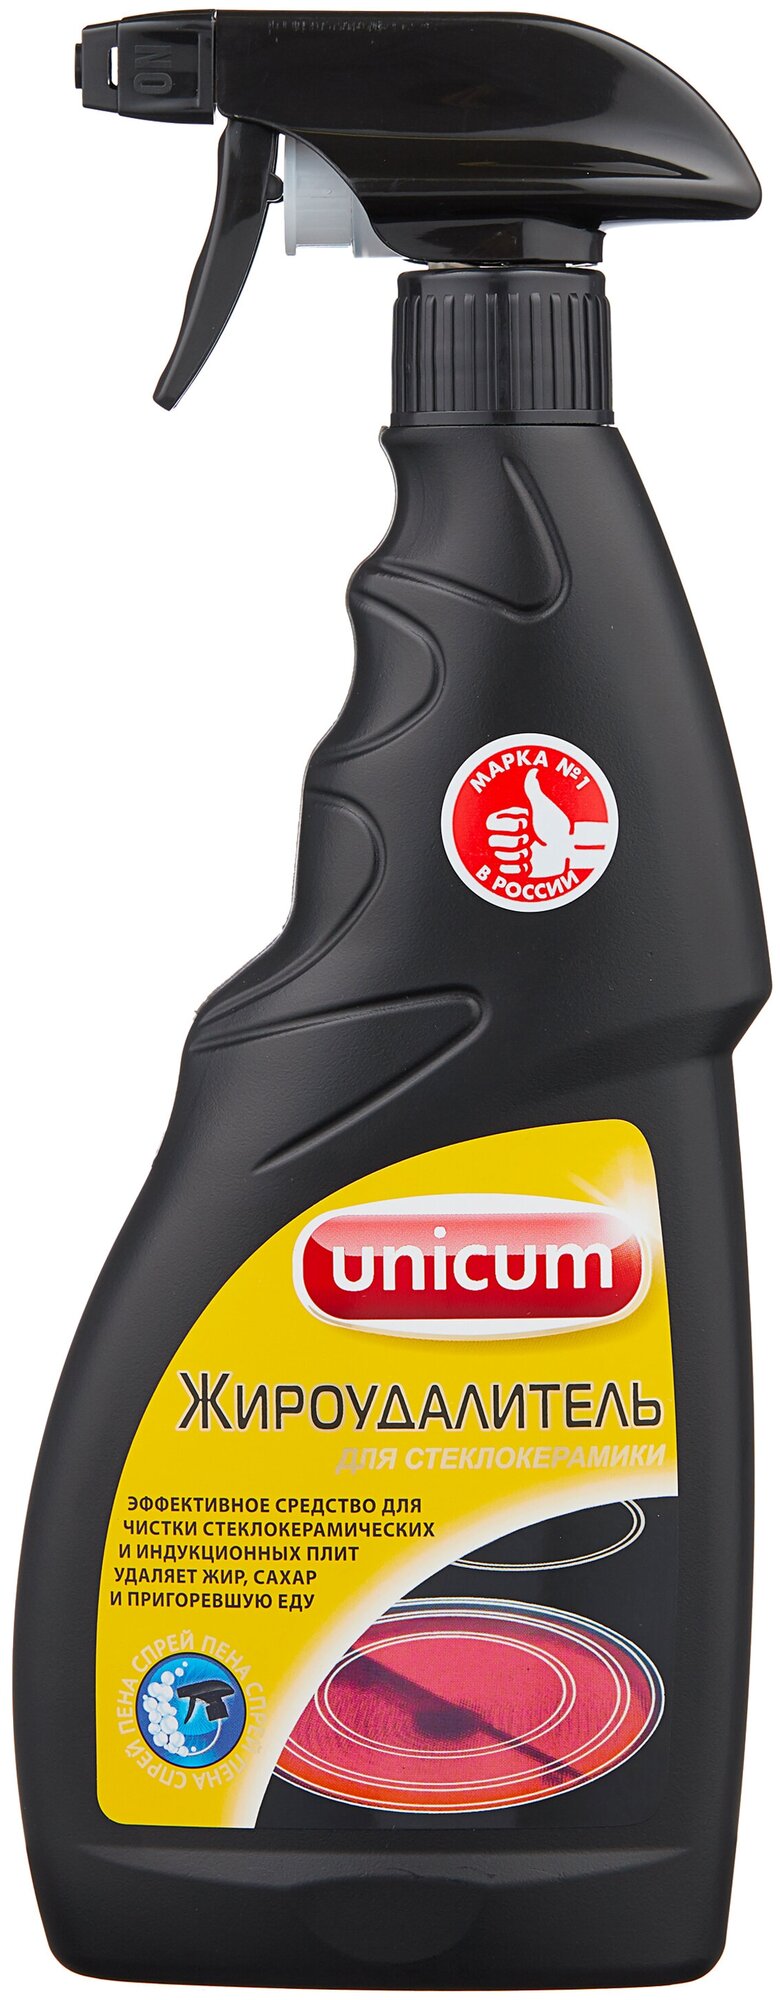 Жироудалитель для чистки стеклокерамических плит Unicum